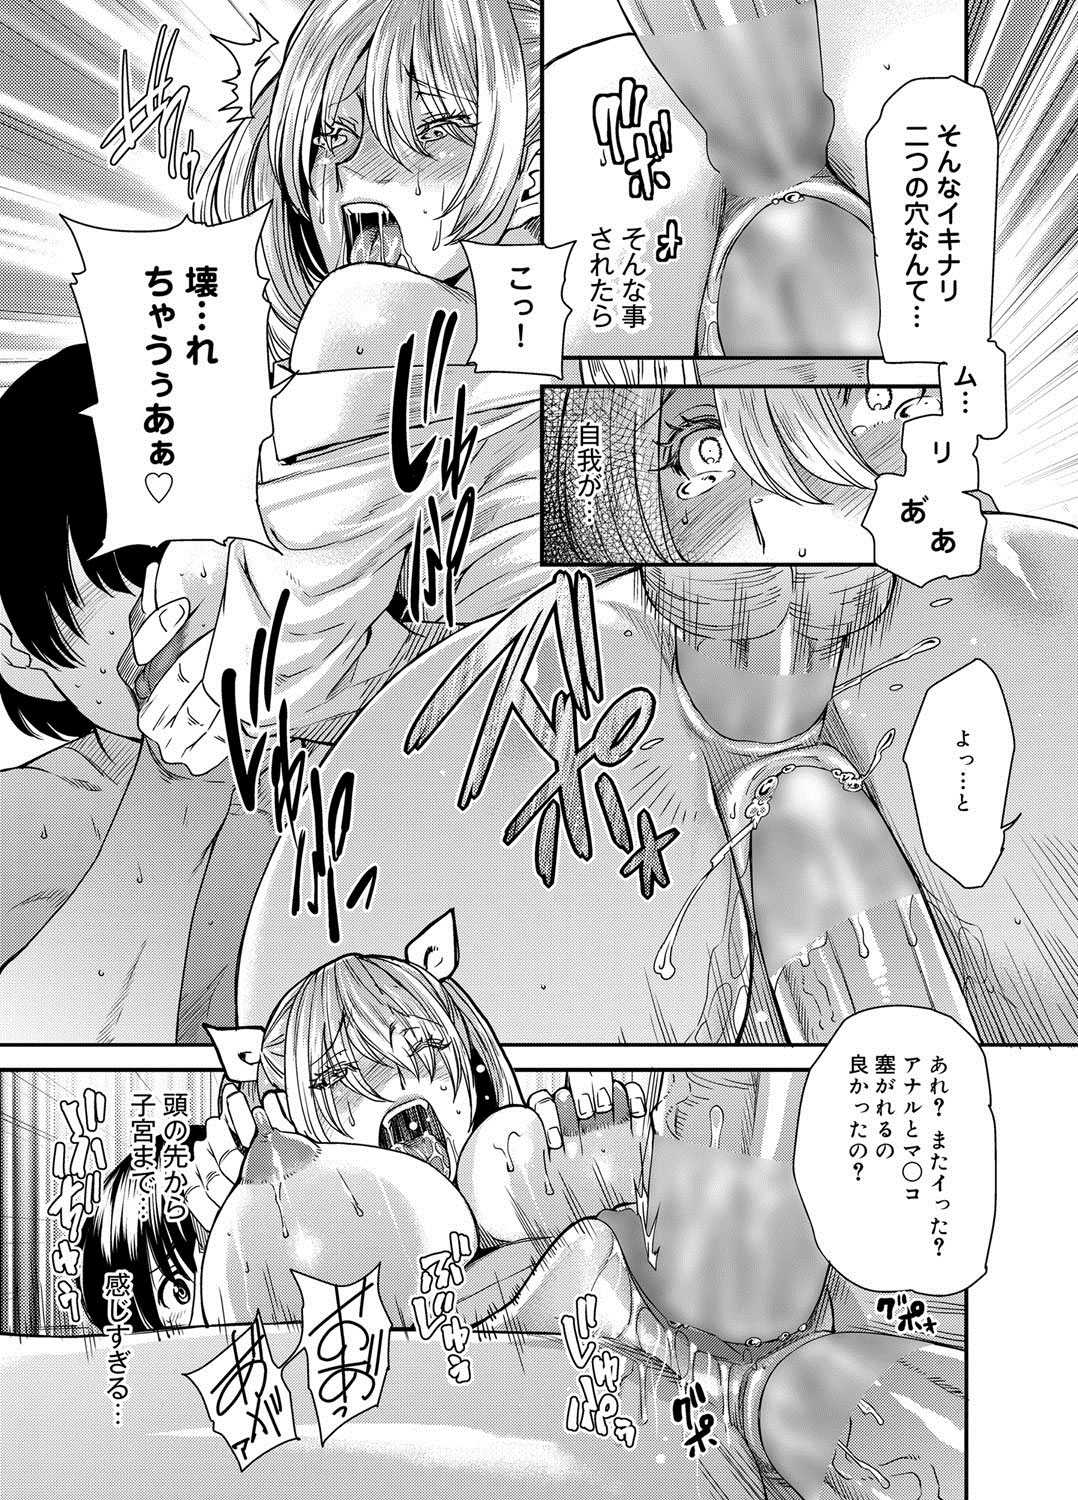 [Ryo Oshima] Mephisto Pheles Ch.01-02 page 21 full